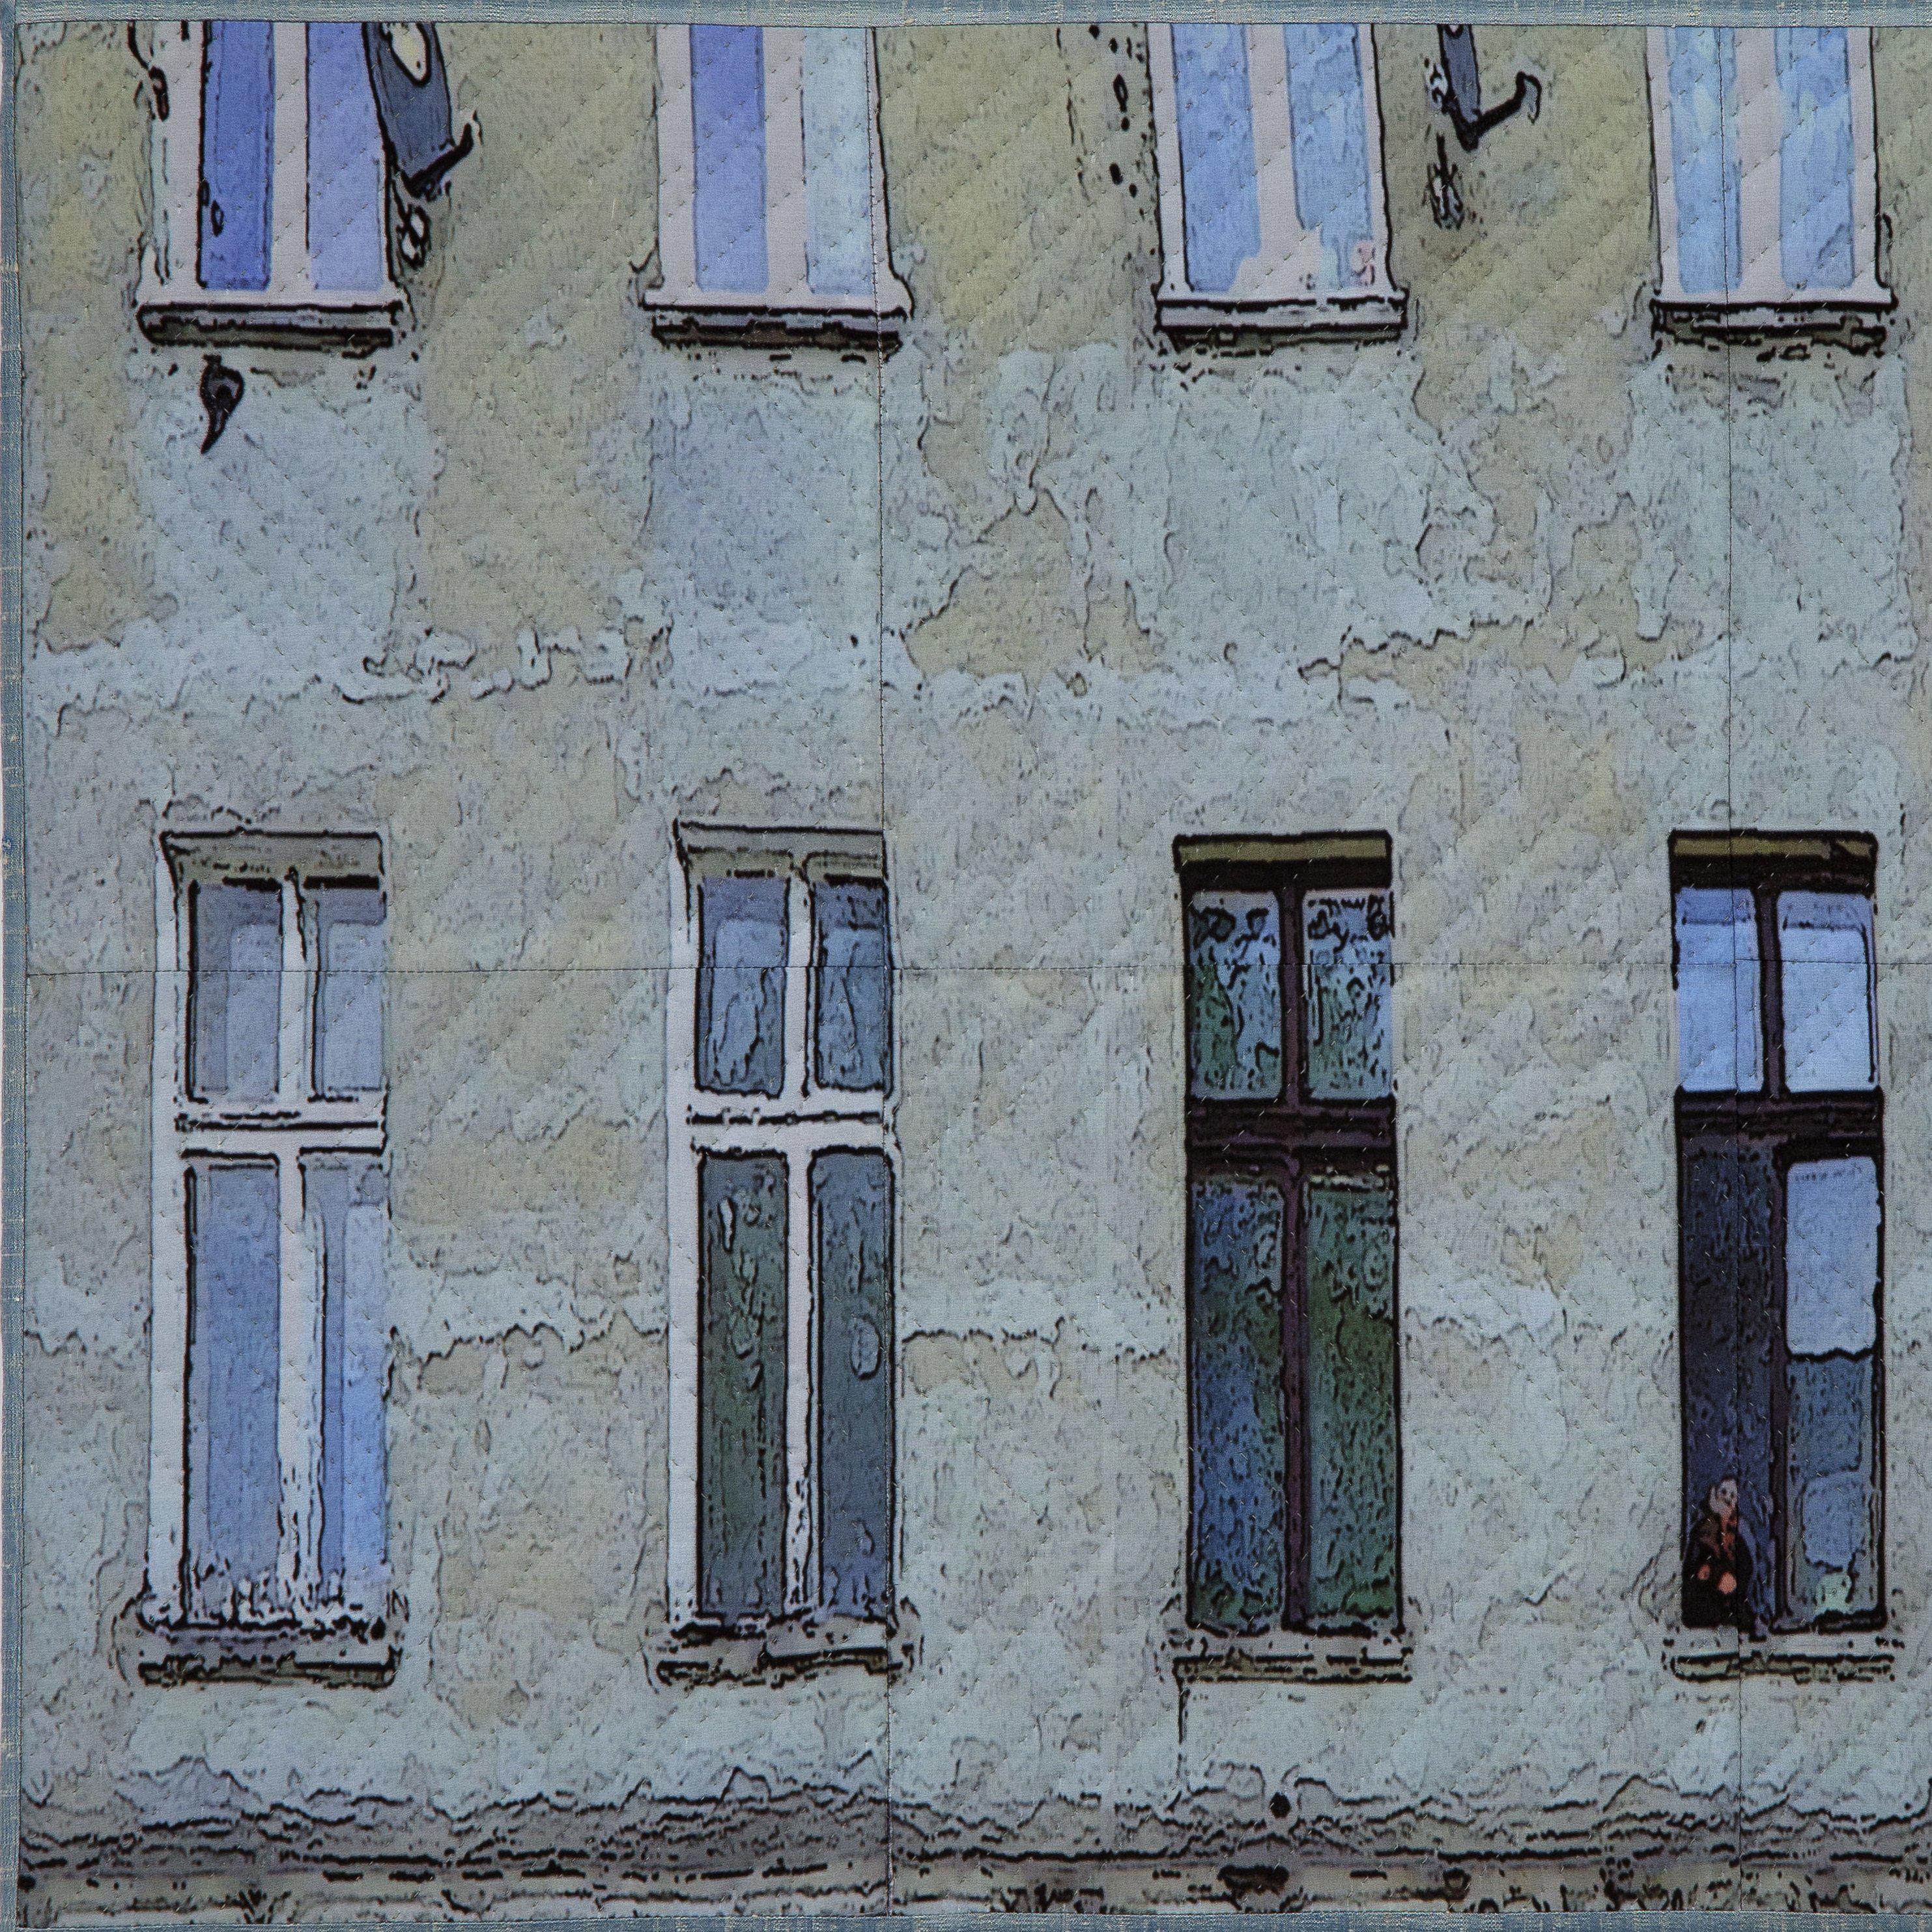 Lodz Windows 1319, Mischtechnik auf Leinwand (Zeitgenössisch), Mixed Media Art, von Marilyn Henrion